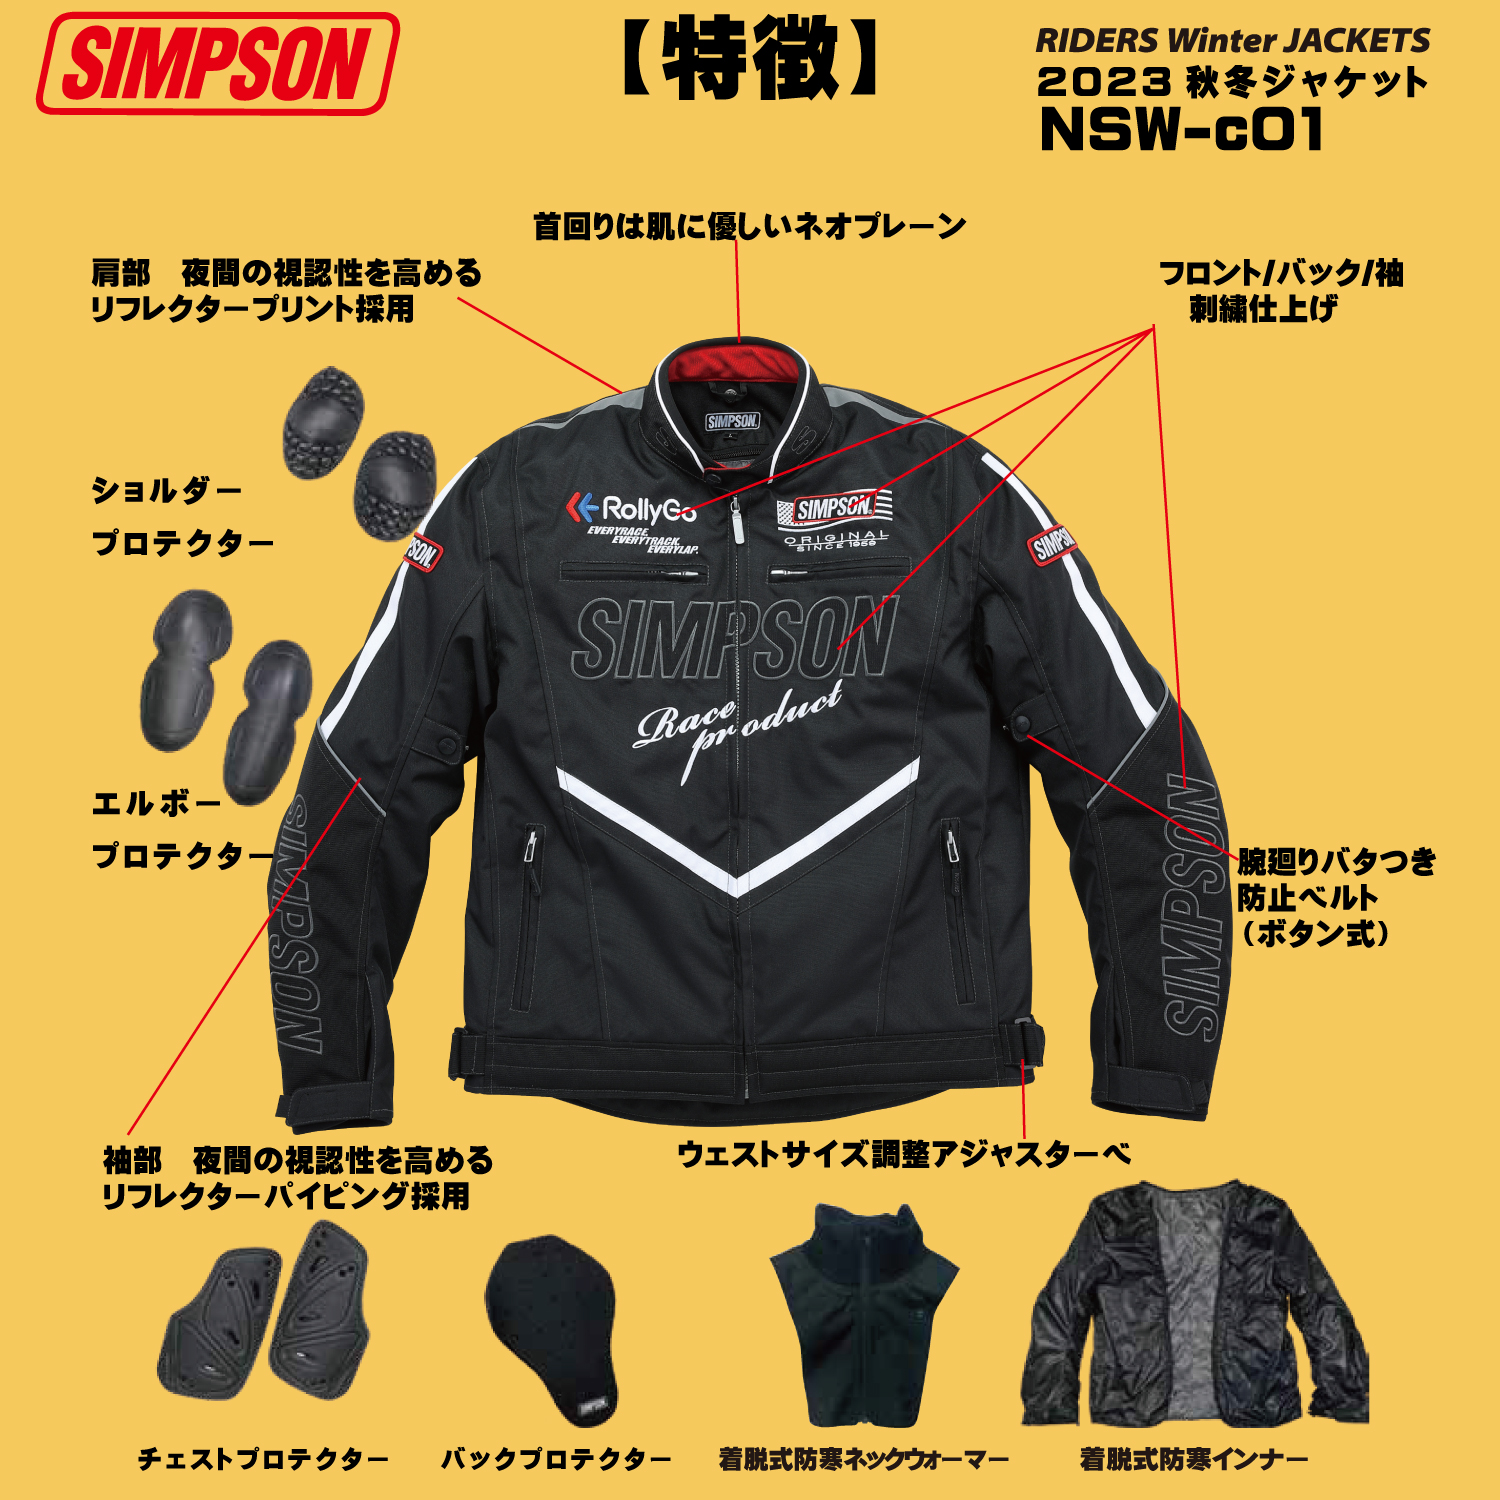 セール品 シンプソンジャケット 秋冬モデル NSW-c02 Simpson